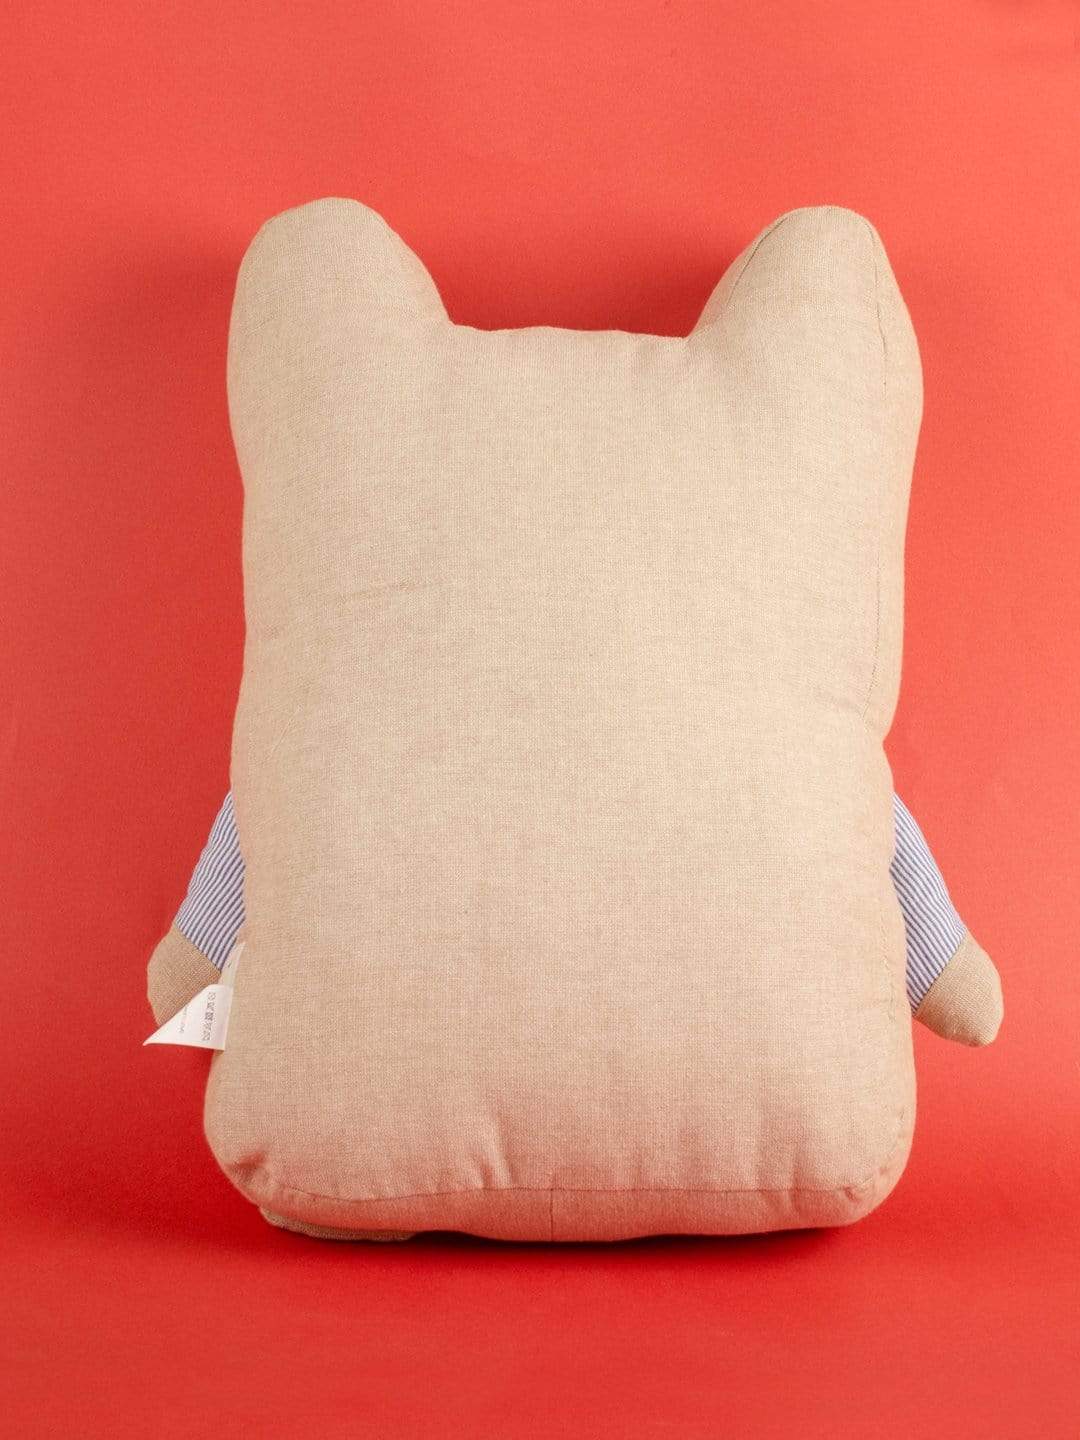 Mr.Bear Shape Cushion